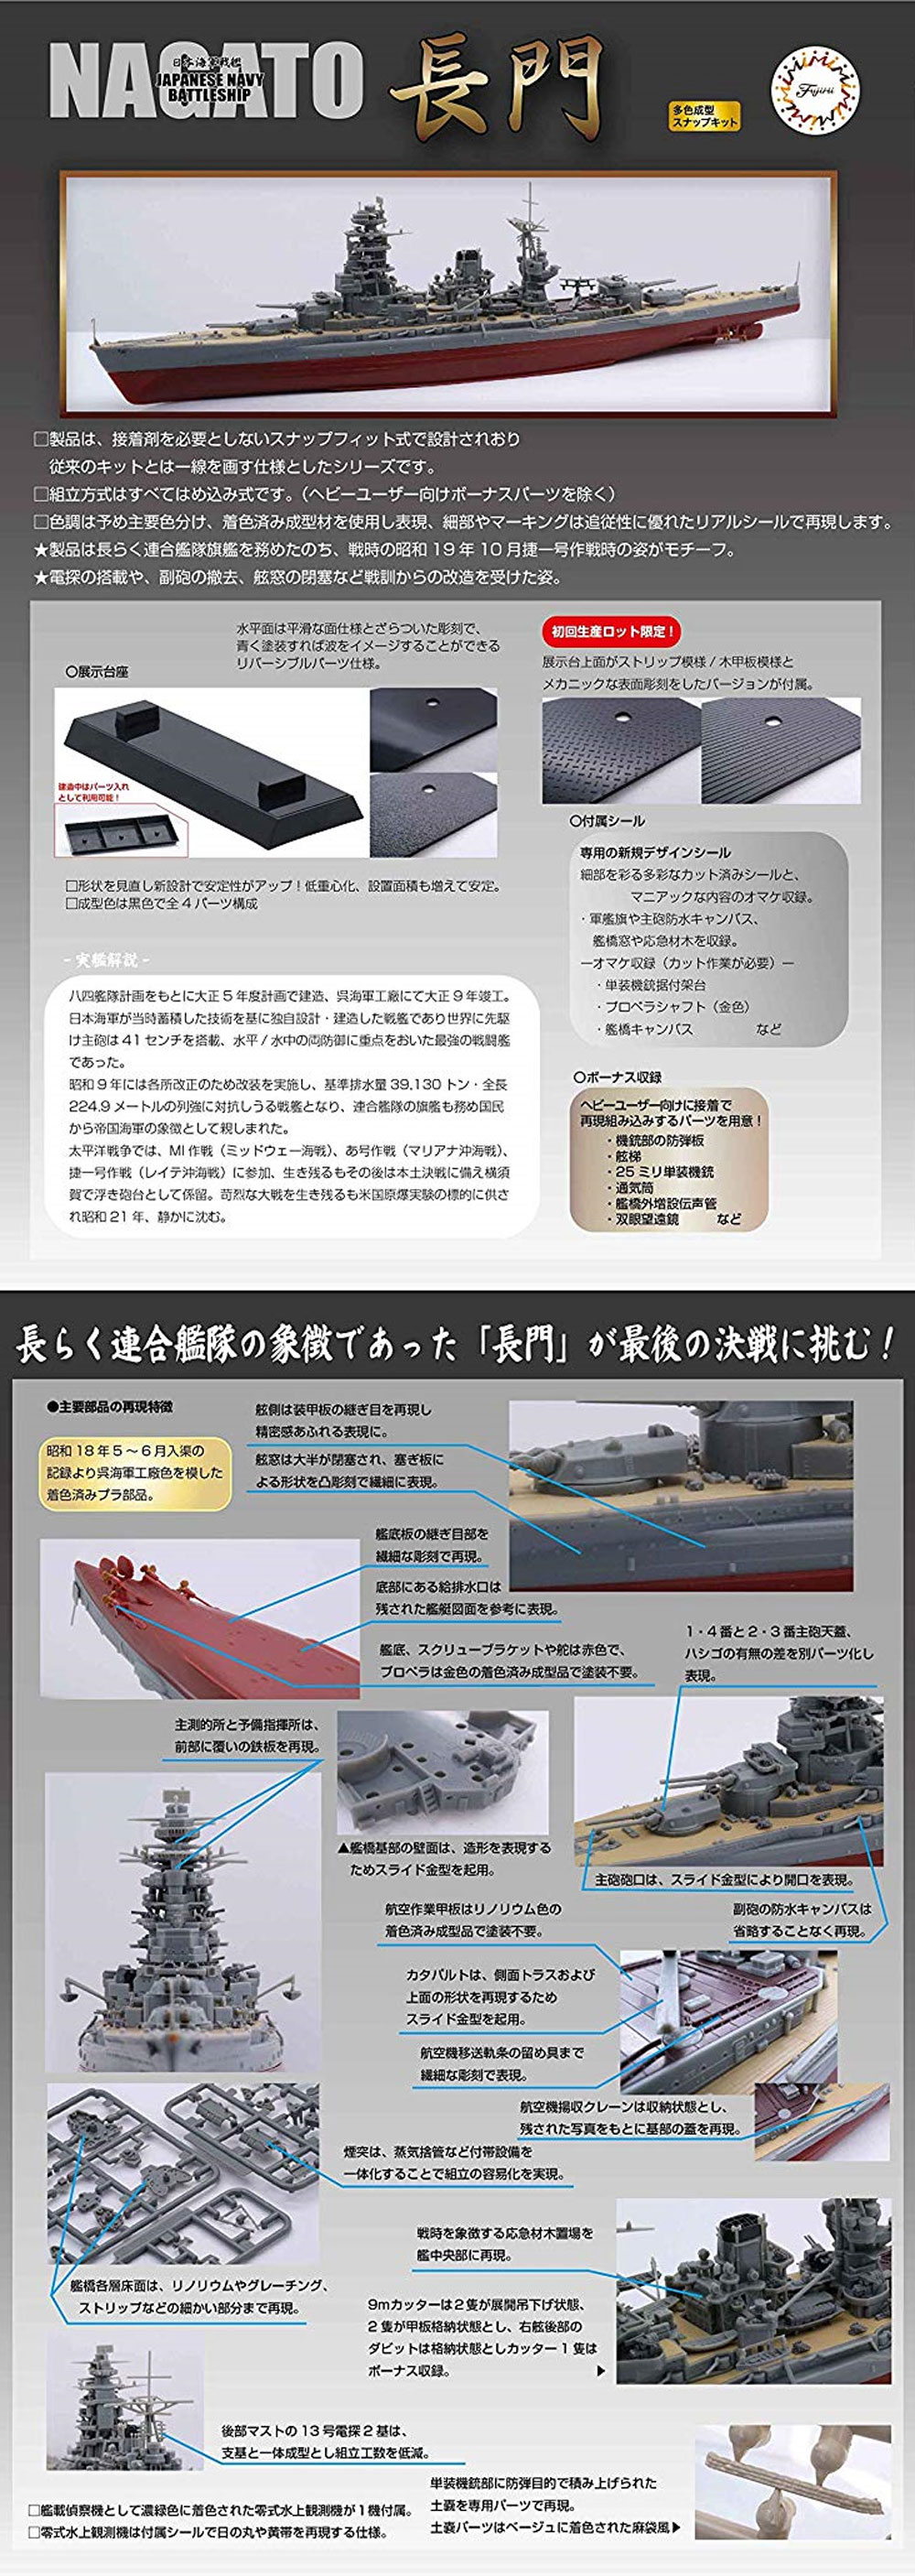 日本海軍 戦艦 長門 昭和19年/捷一号作戦 プラモデル (フジミ 艦NEXT No.013) 商品画像_3